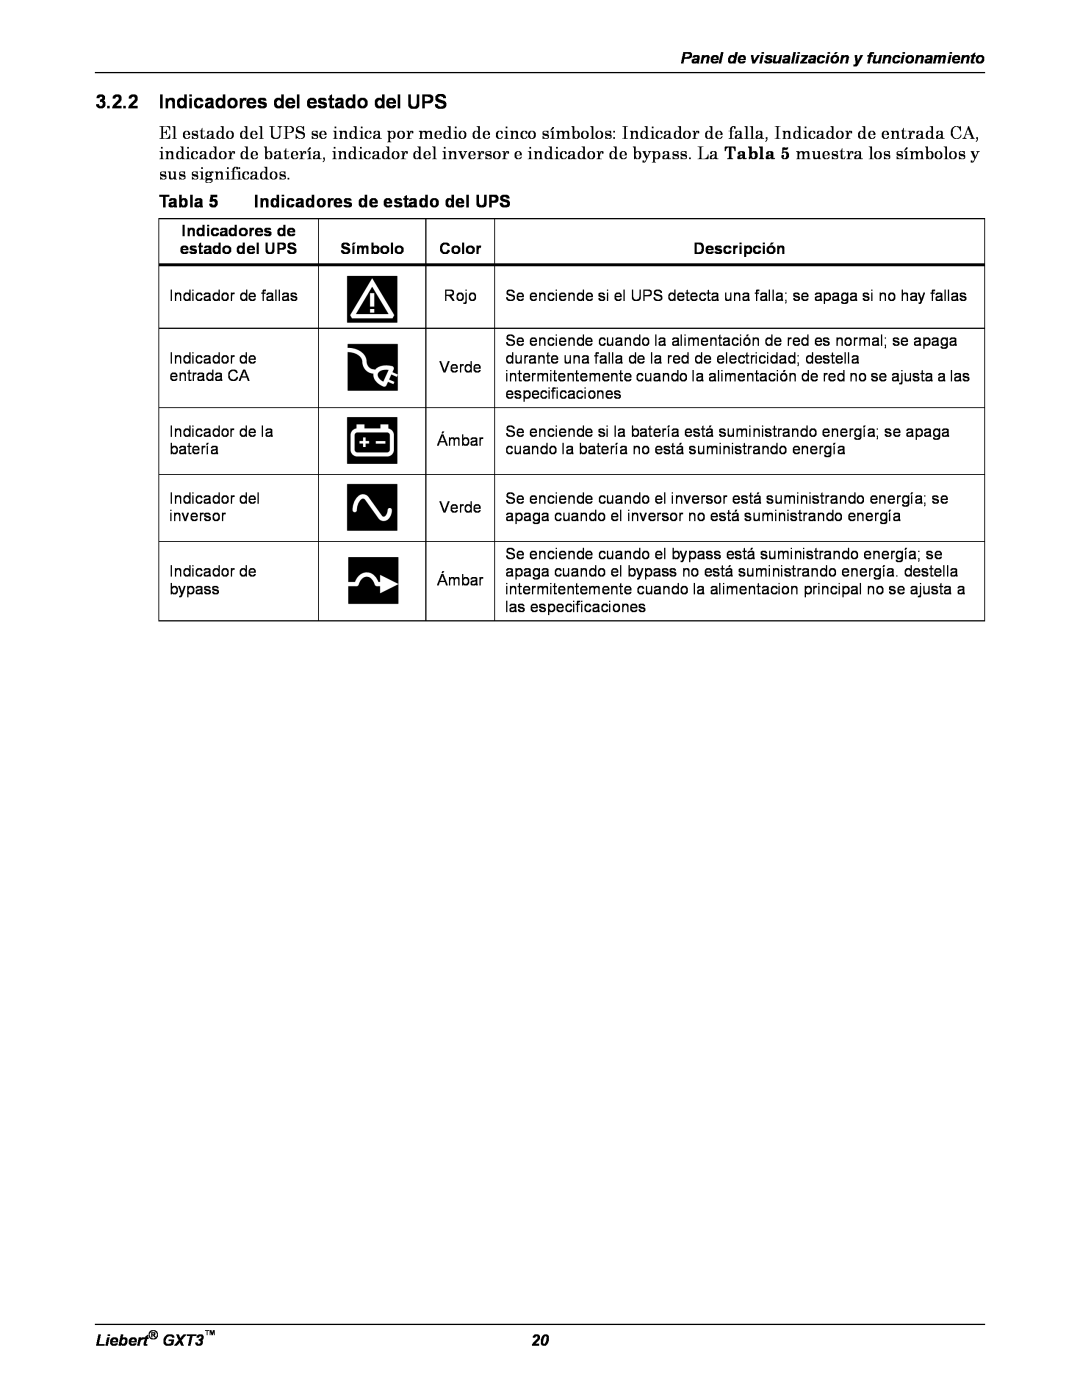 Emerson manual Indicadores del estado del UPS, Tabla 5 Indicadores de estado del UPS, Liebert GXT3 